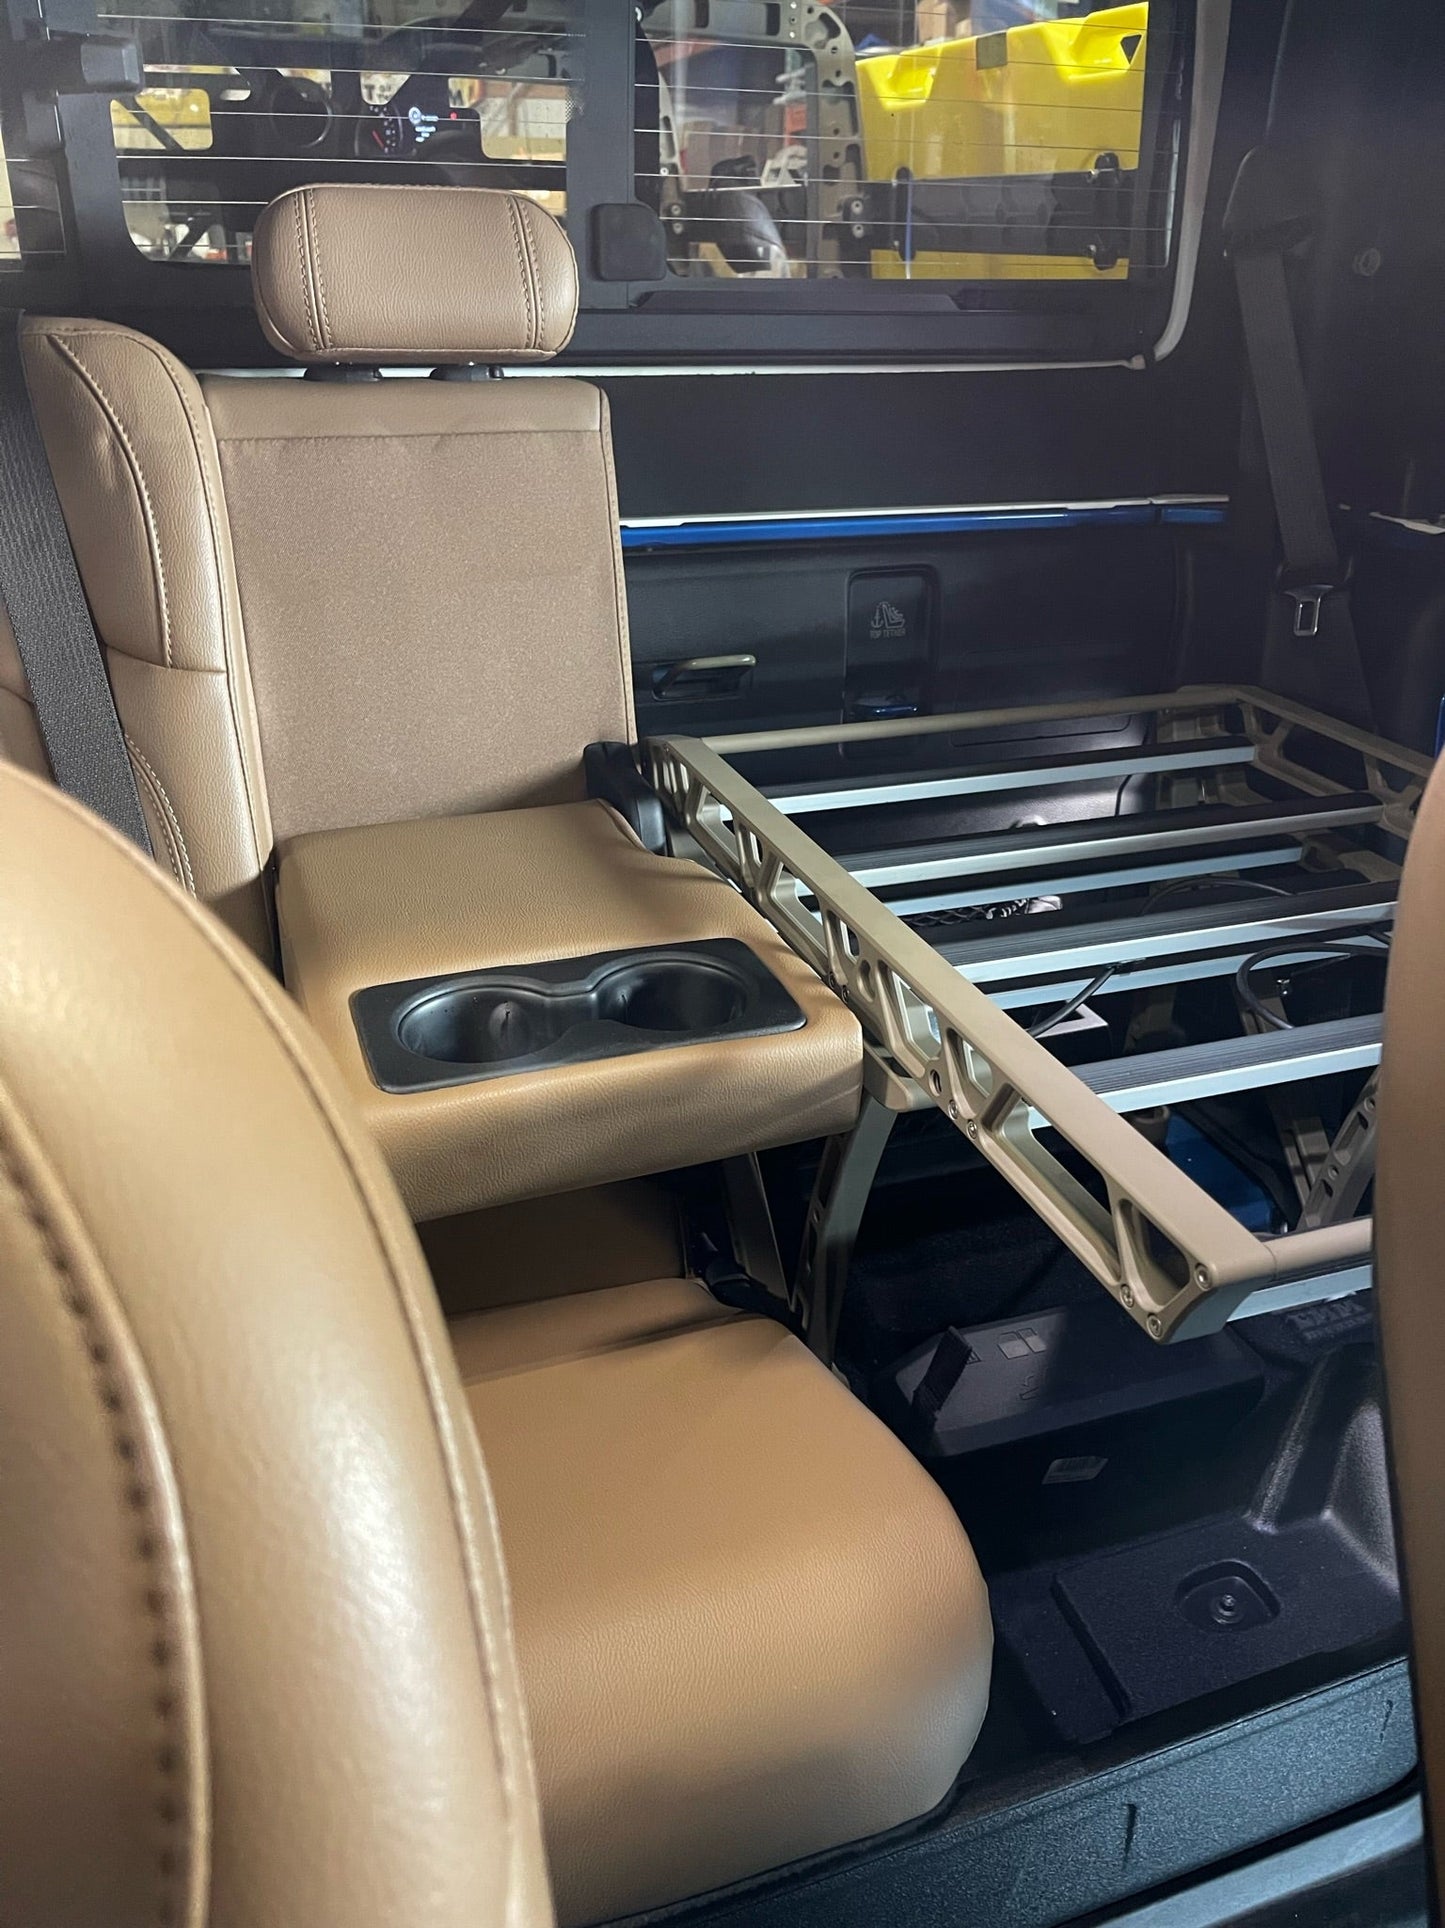 RSDR (Rear Seat Delete Rack)